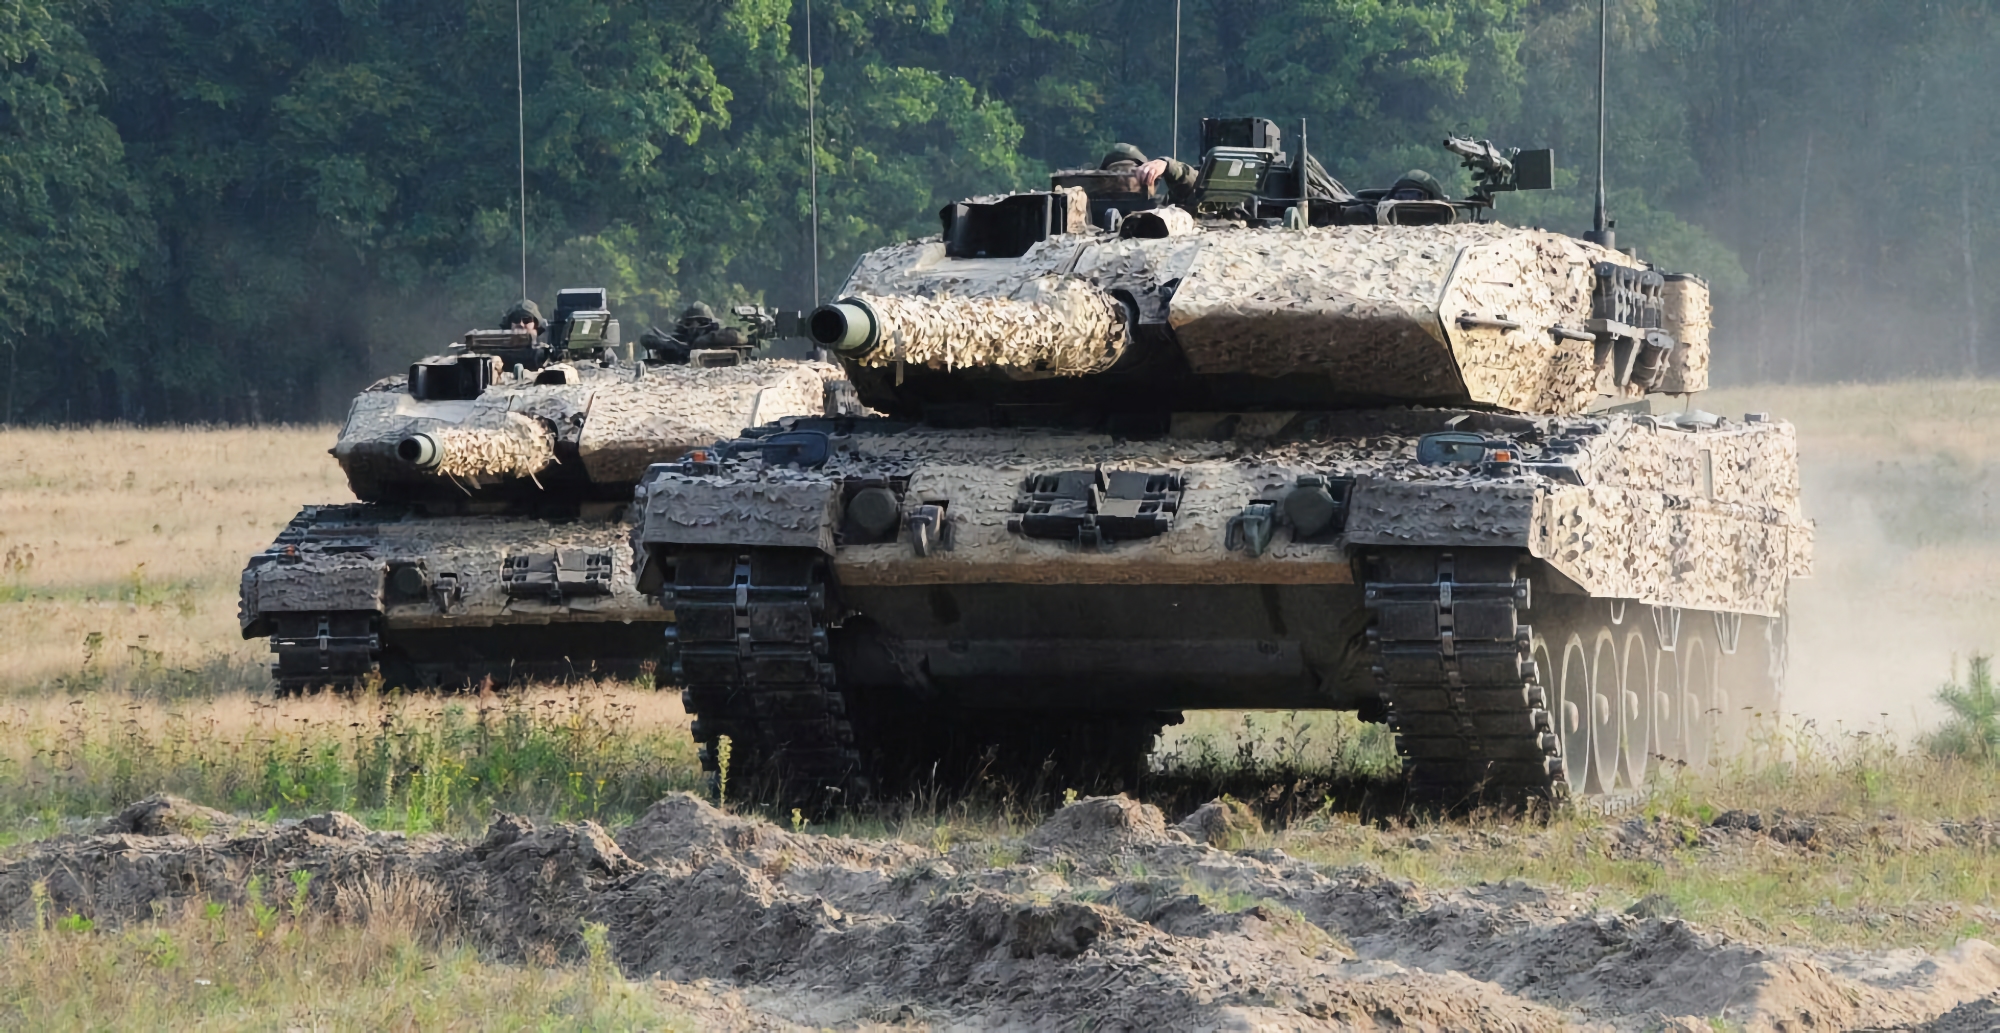 Niemcy rozpoczynają program szkoleniowy Leopard 2 dla ukraińskich tankowców